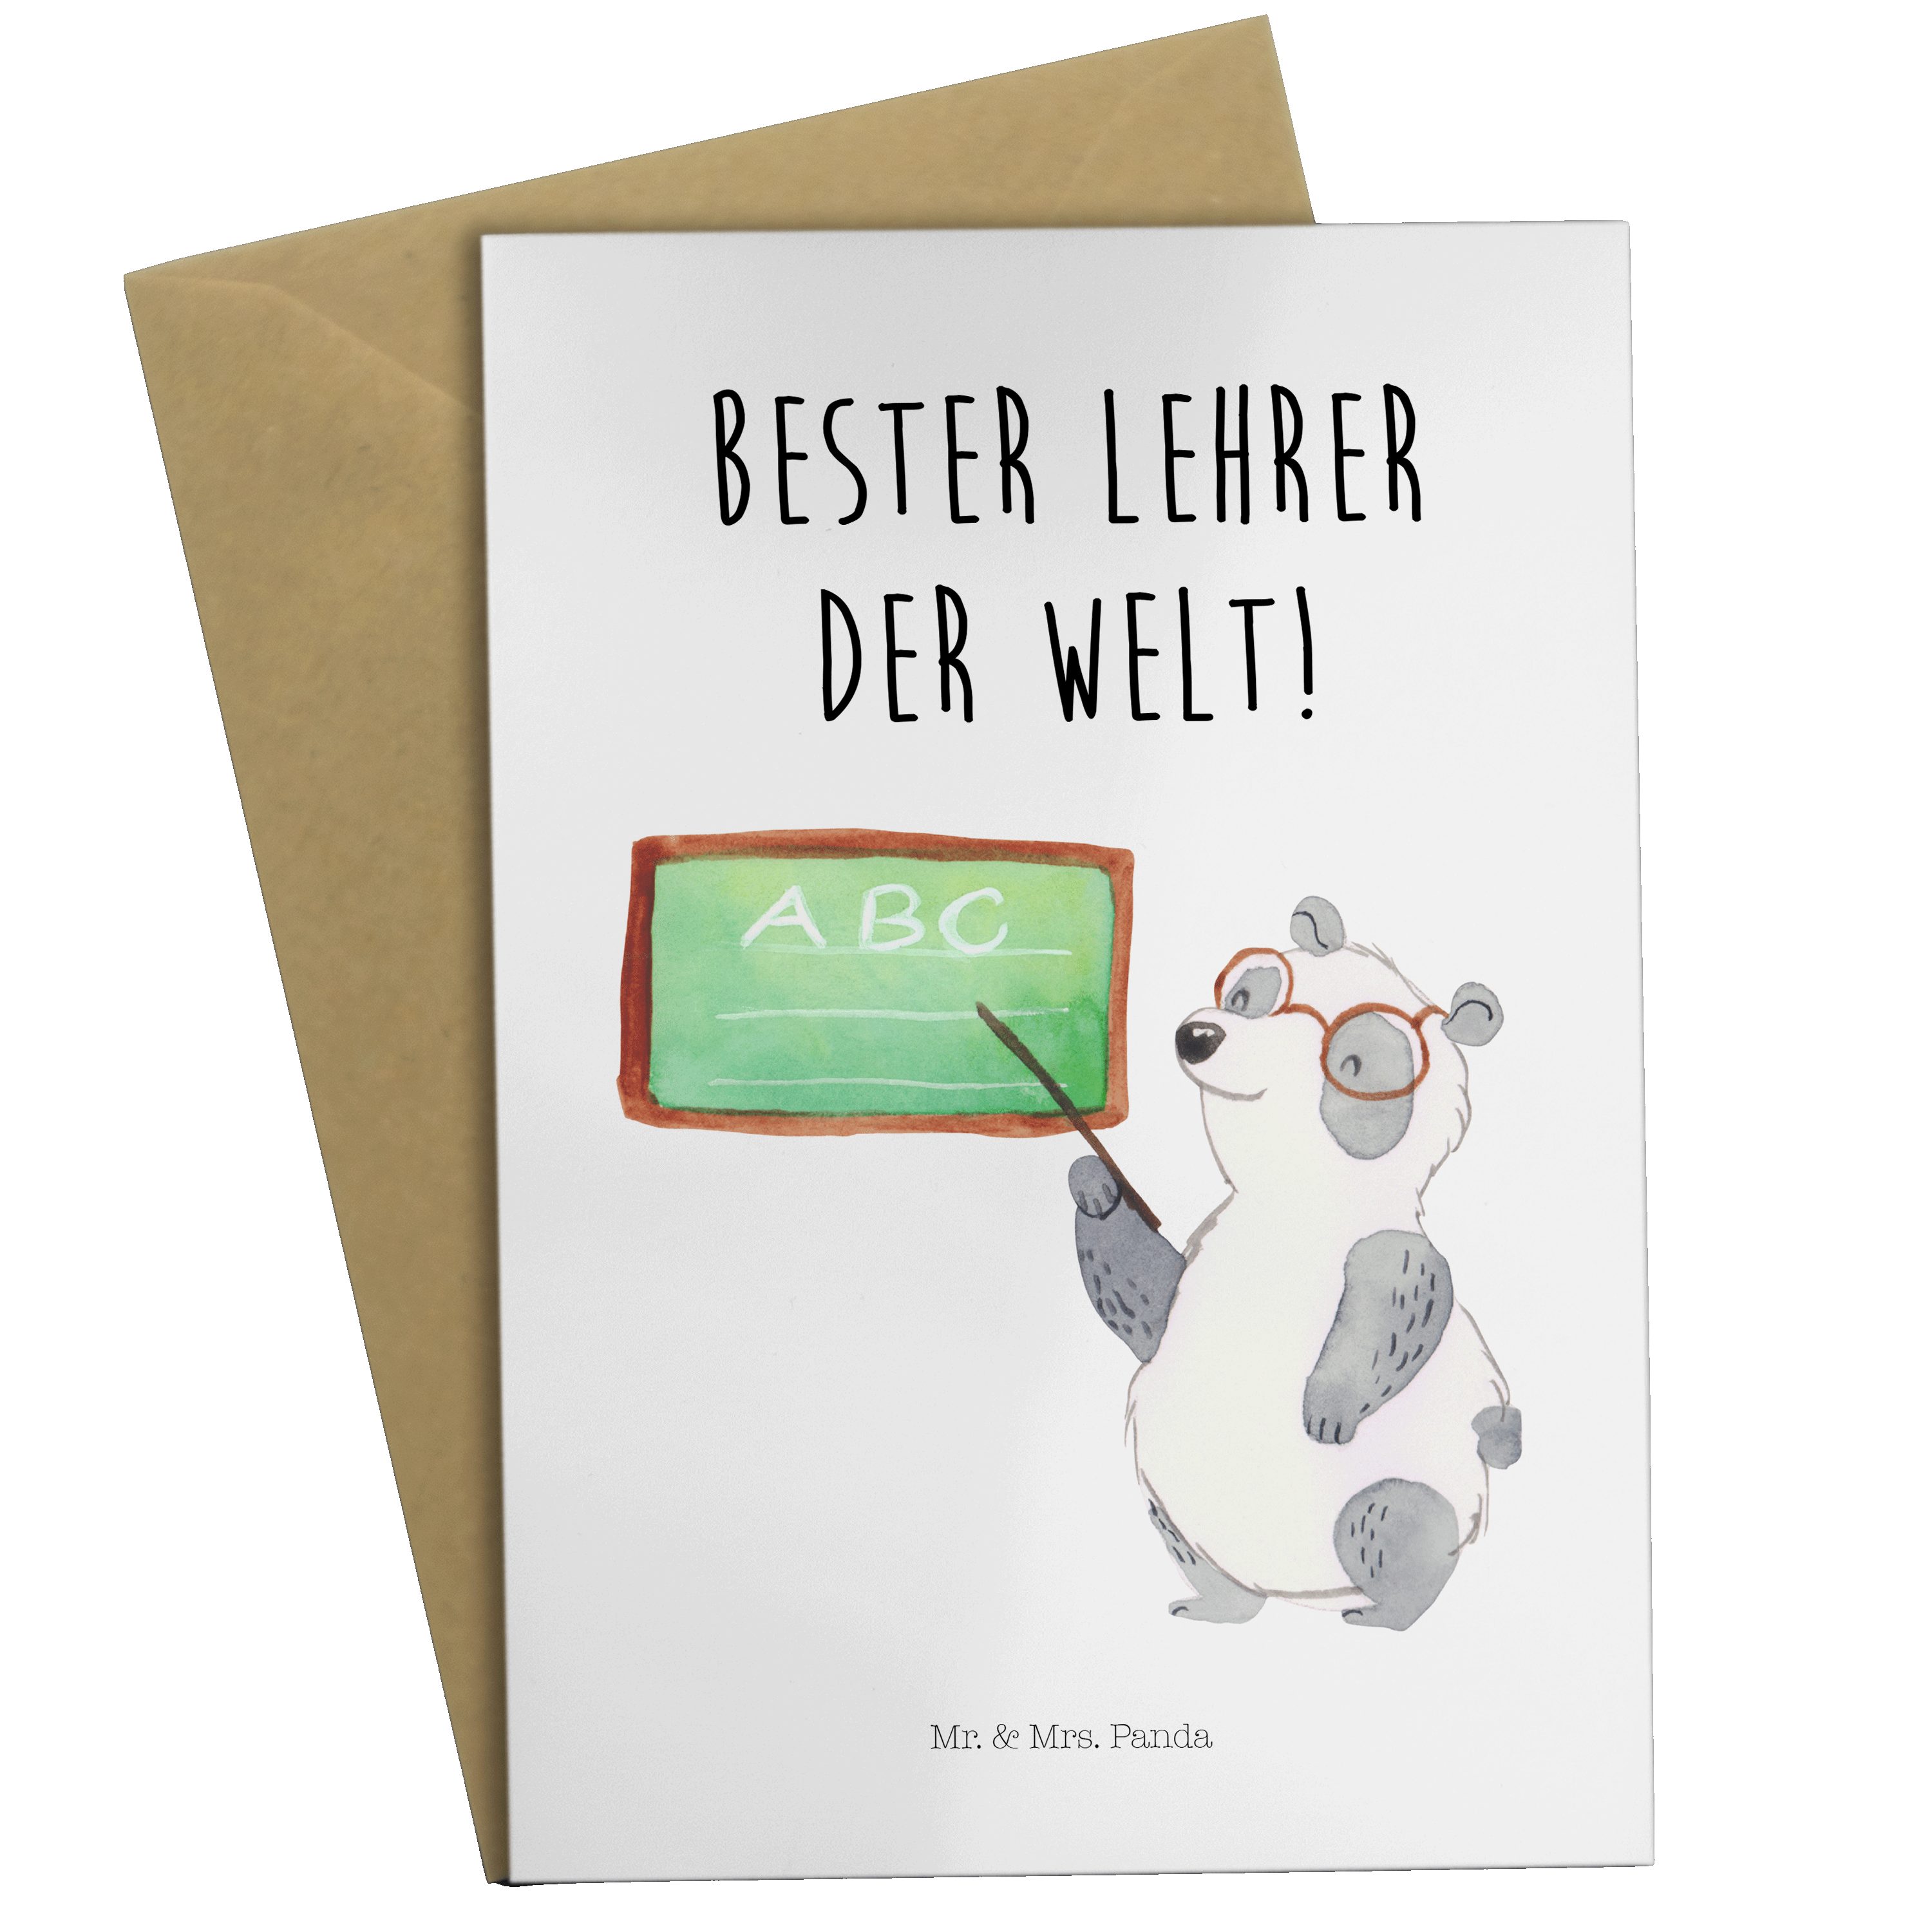 Mr. & - Klappkarte, Weiß Panda - Grußkarte Hochzeitskarte, Tiermotiv Mrs. Panda Lehrer Geschenk